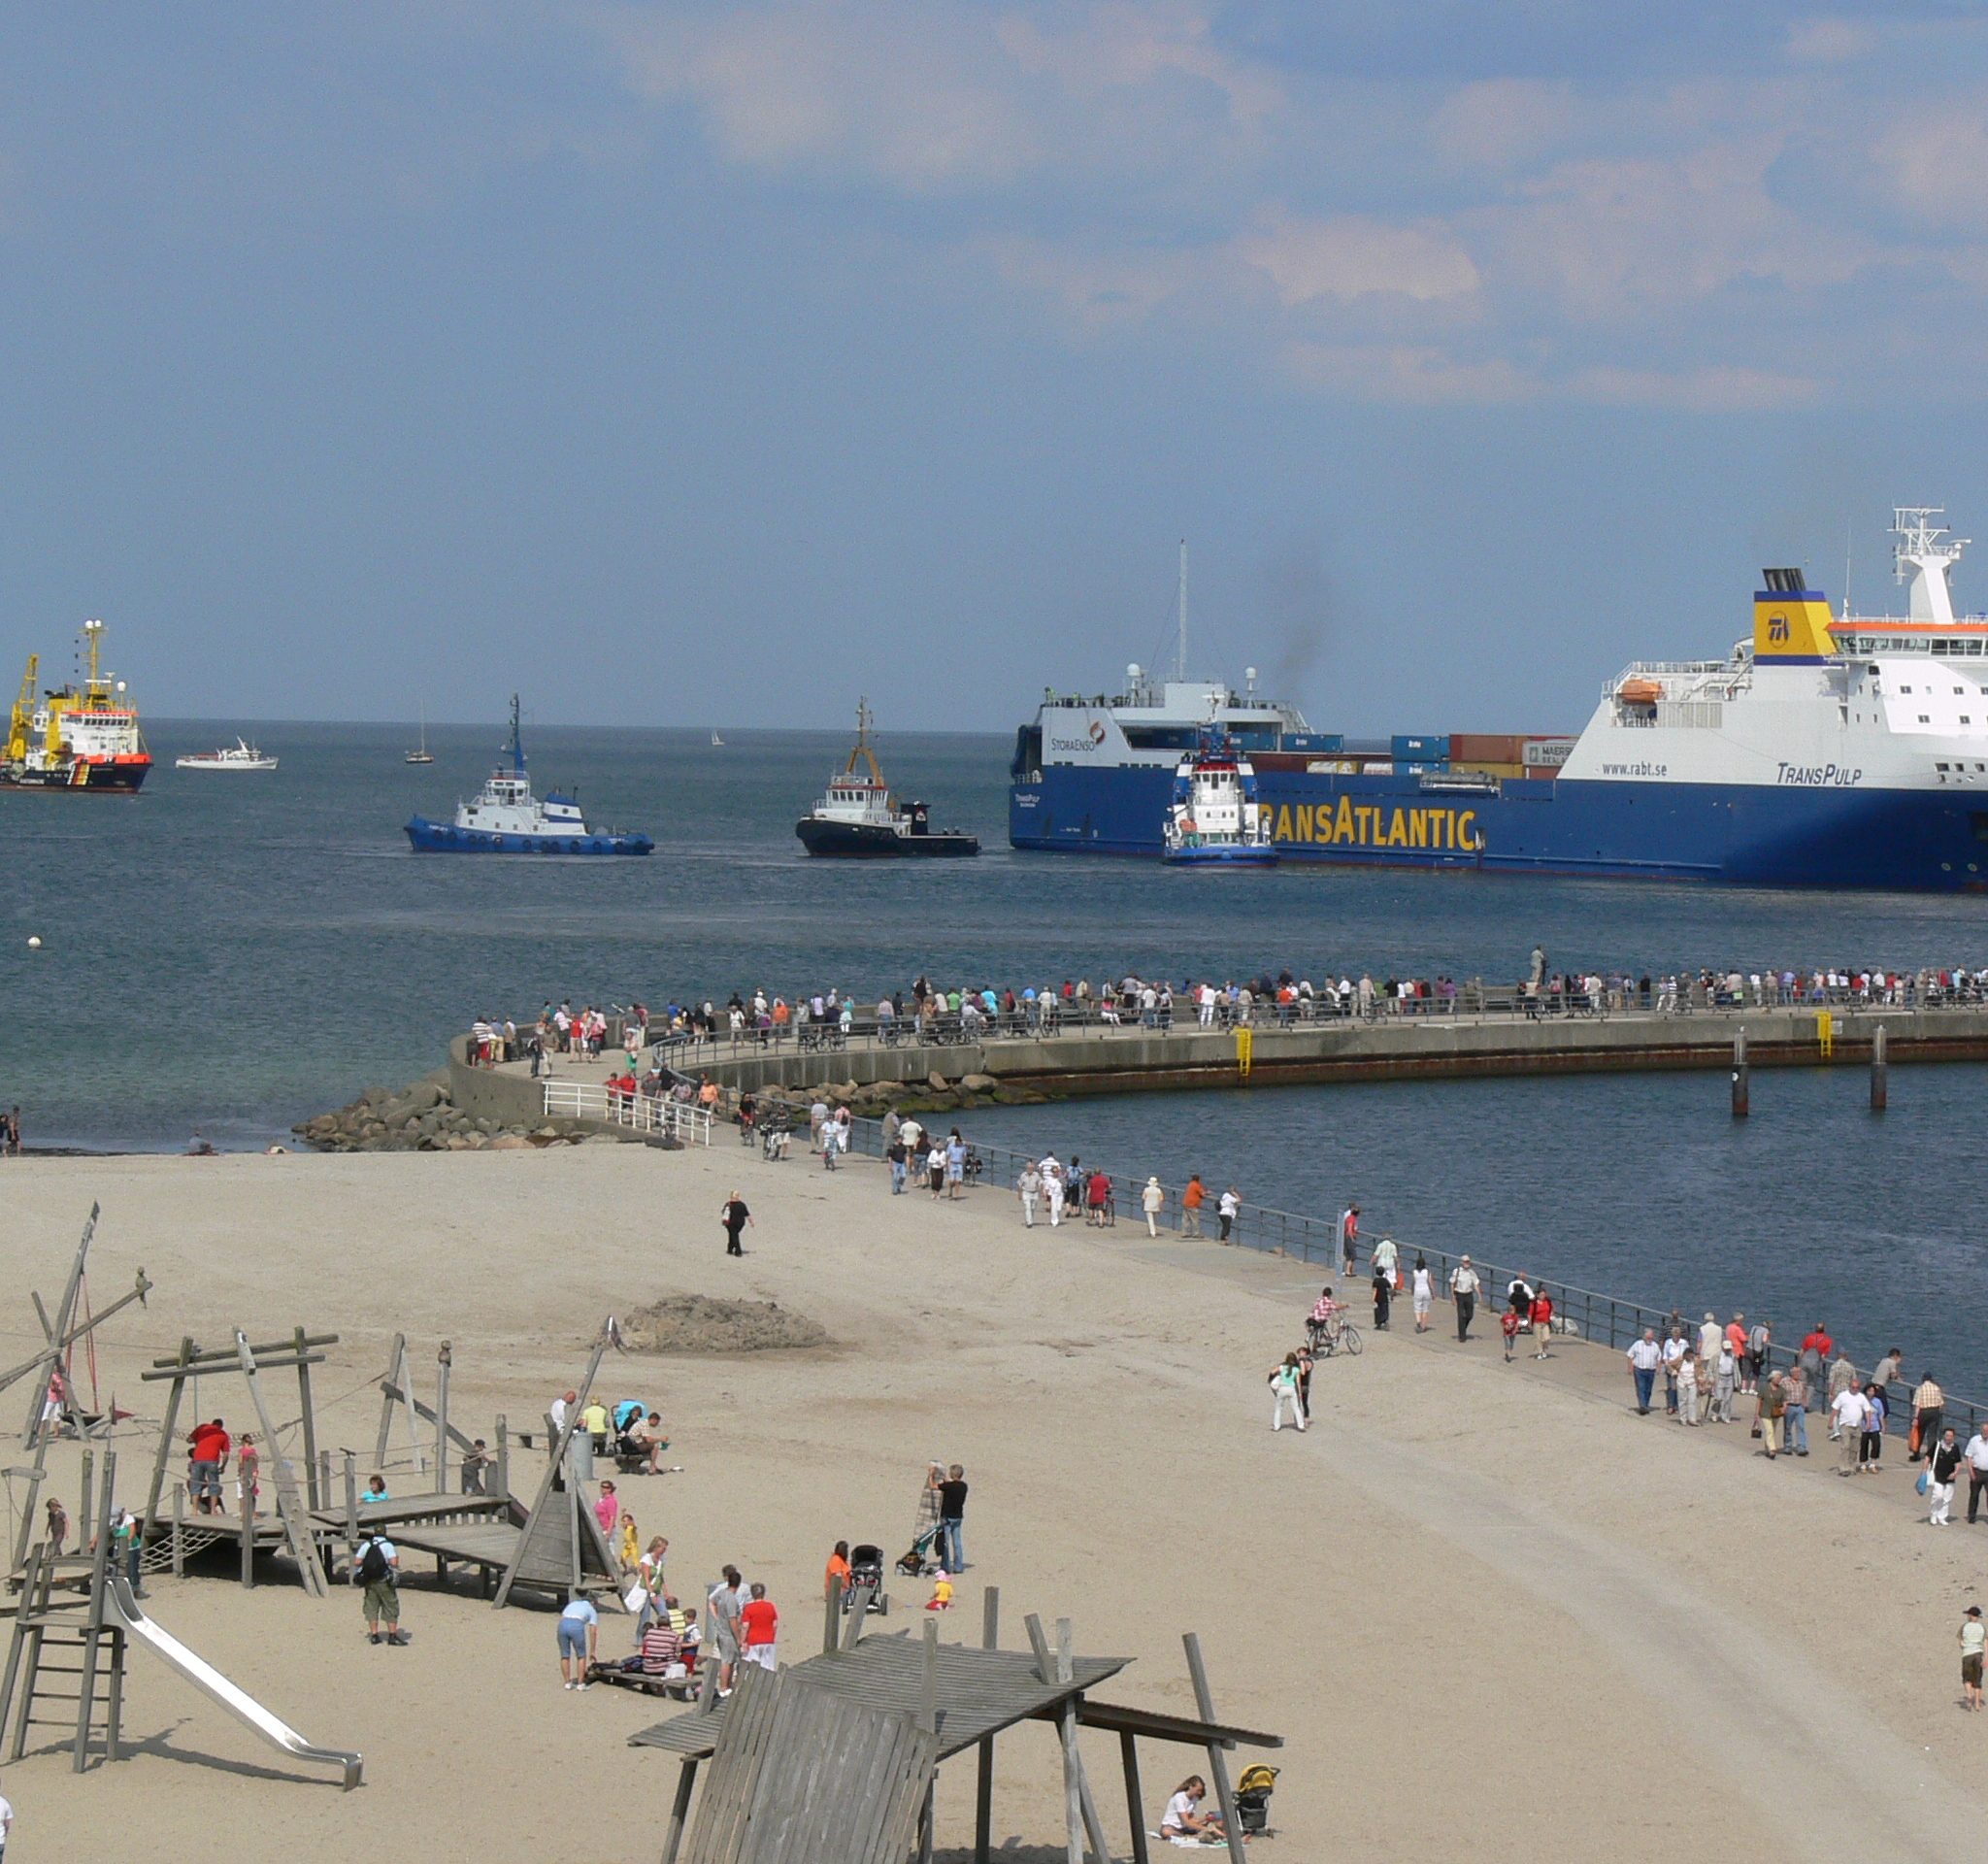 Transpulp blokkeert grootste Duitse veerhaven